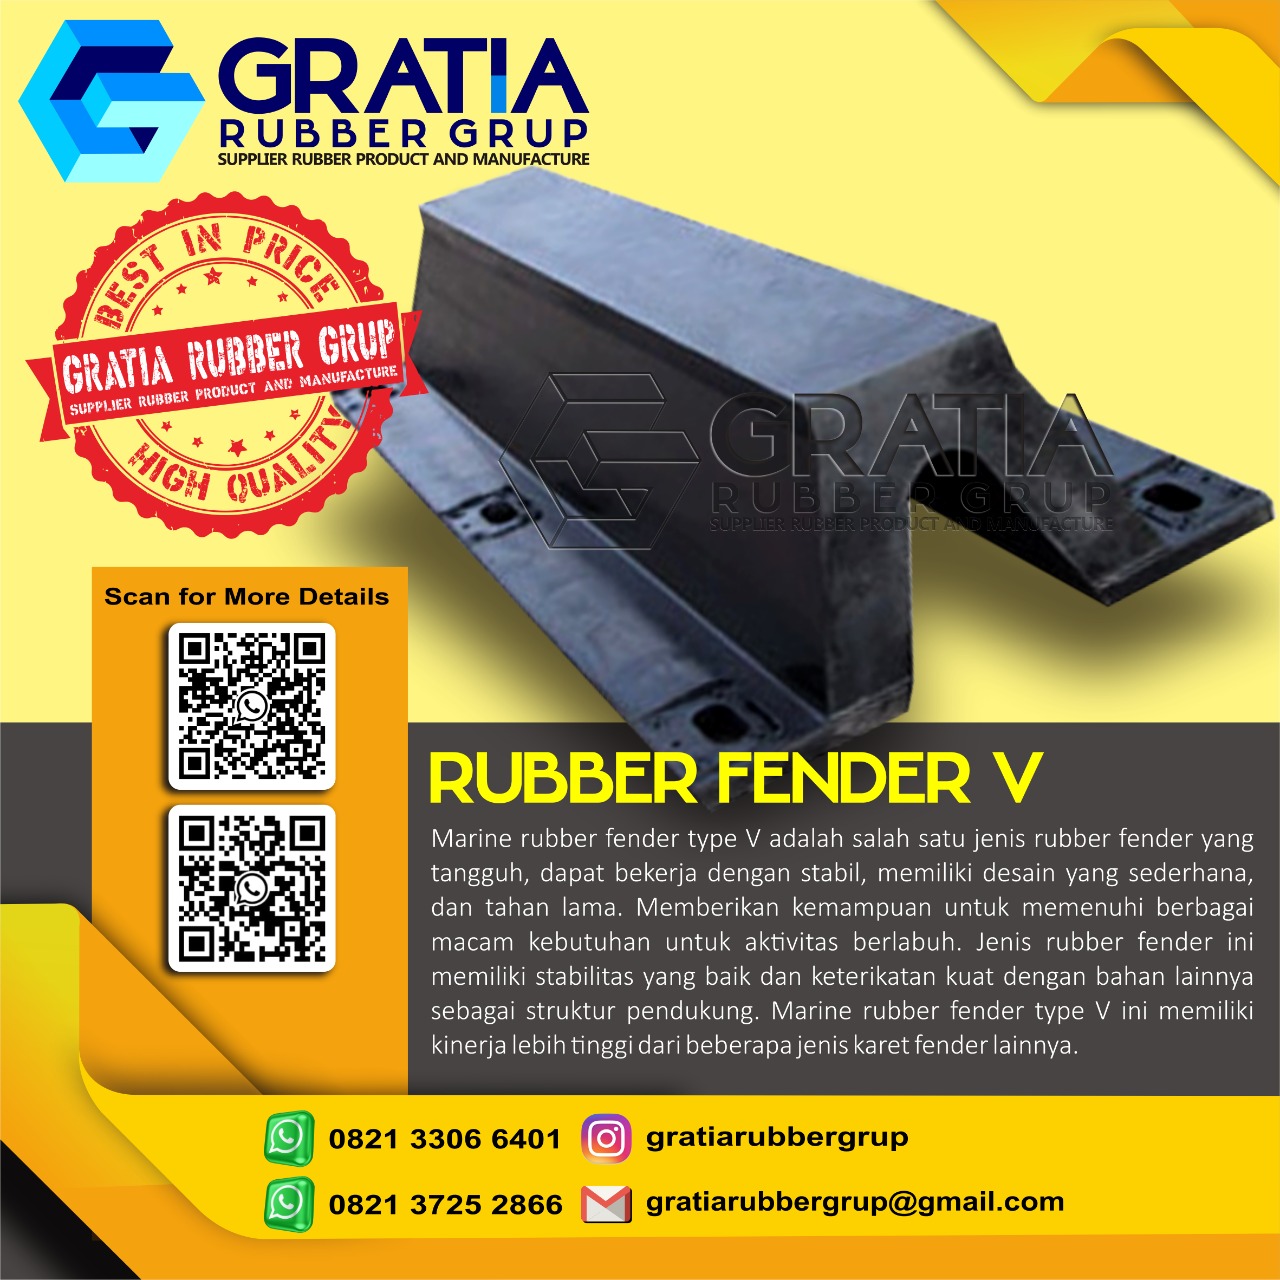 Harga Rubber Fender Murah Dan Berkualitas  Melayani Pengiriman Ke Pagar Alam Sumatera Selatan Hub 0821 3306 0461